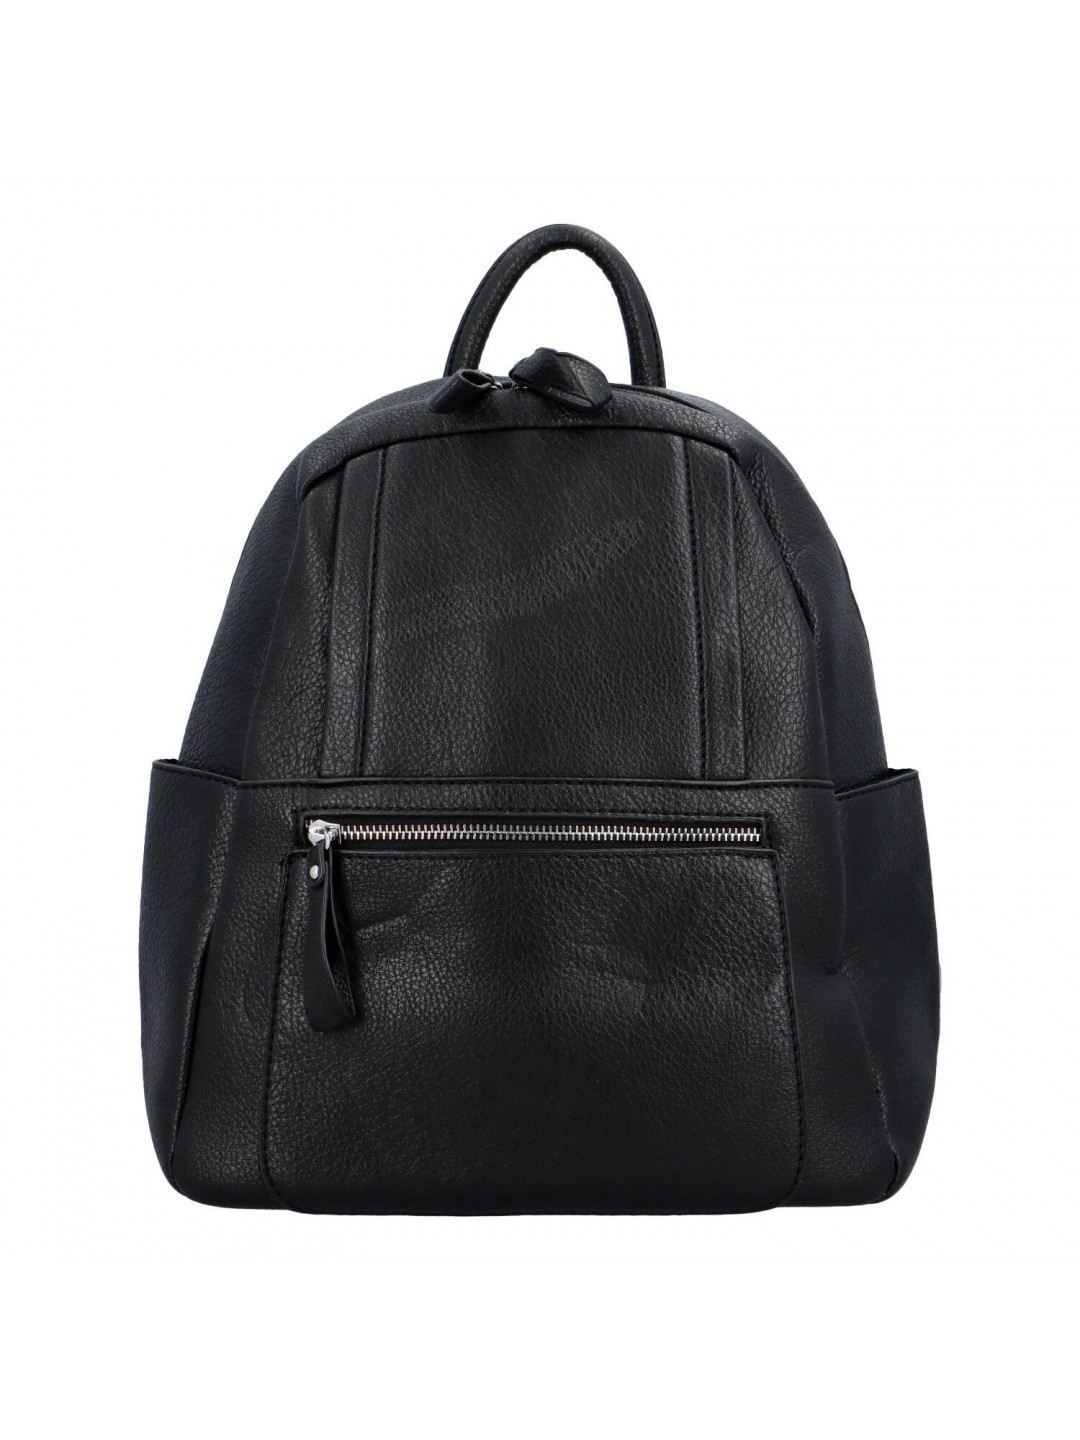 Příjemný dámský koženkový batůžek kabelka Amurath černá